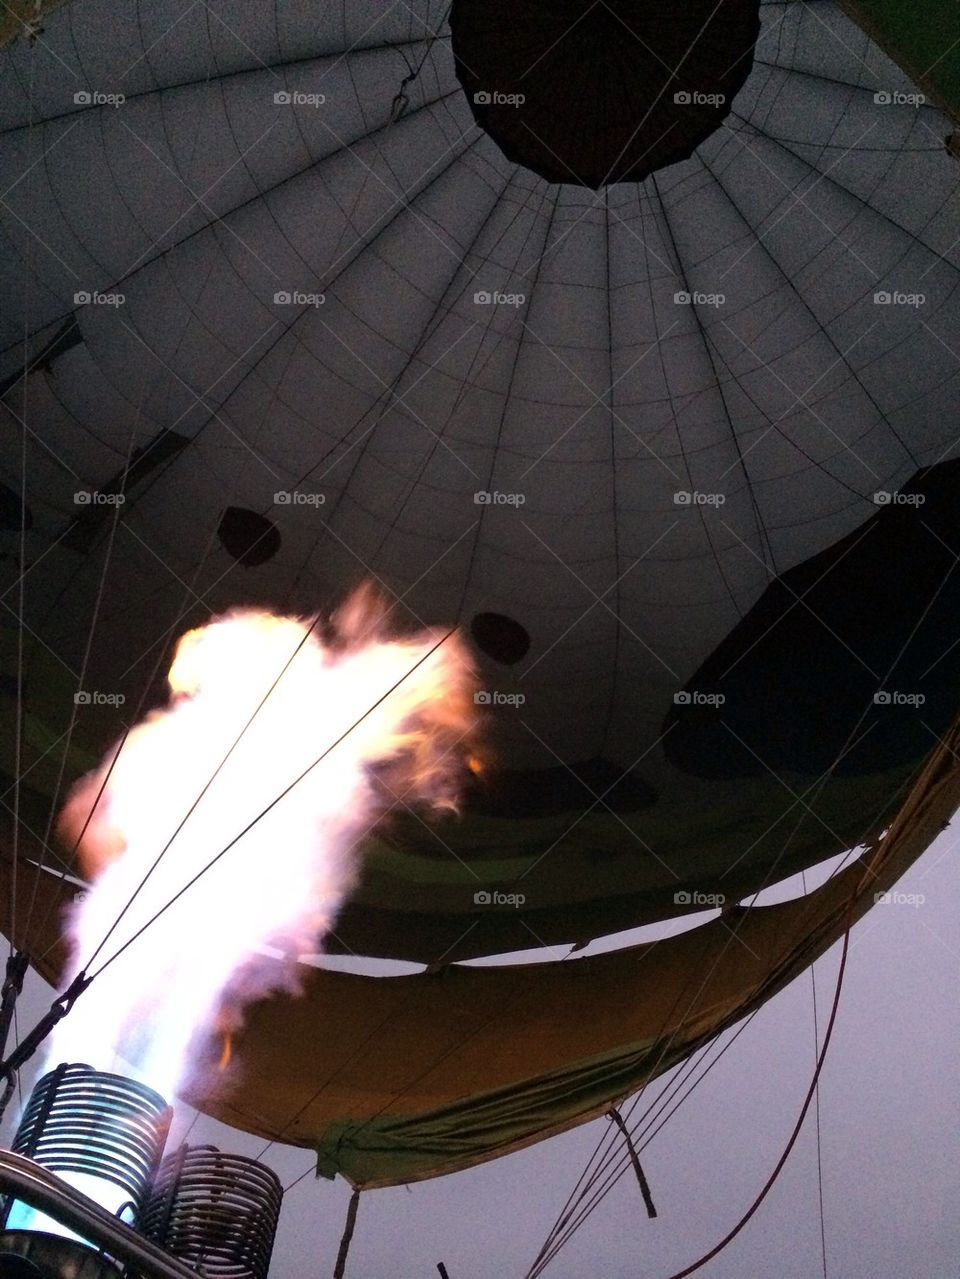 Hot air ballooning 